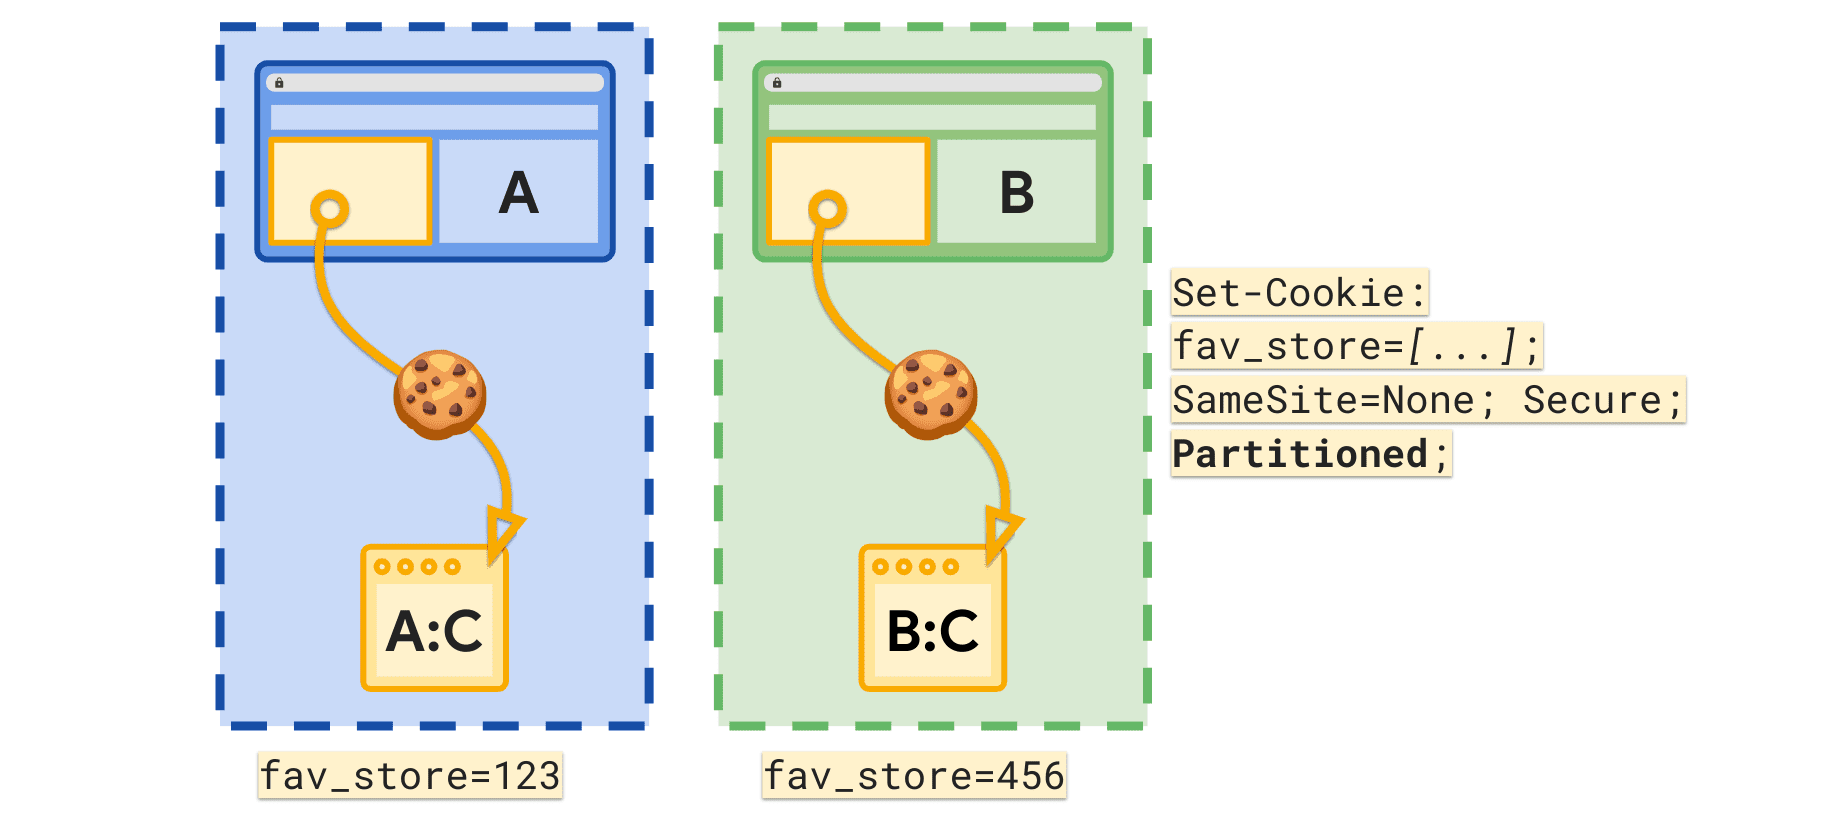 Атрибут Partitioned позволяет установить отдельный файл cookie fav_store для каждого сайта верхнего уровня.